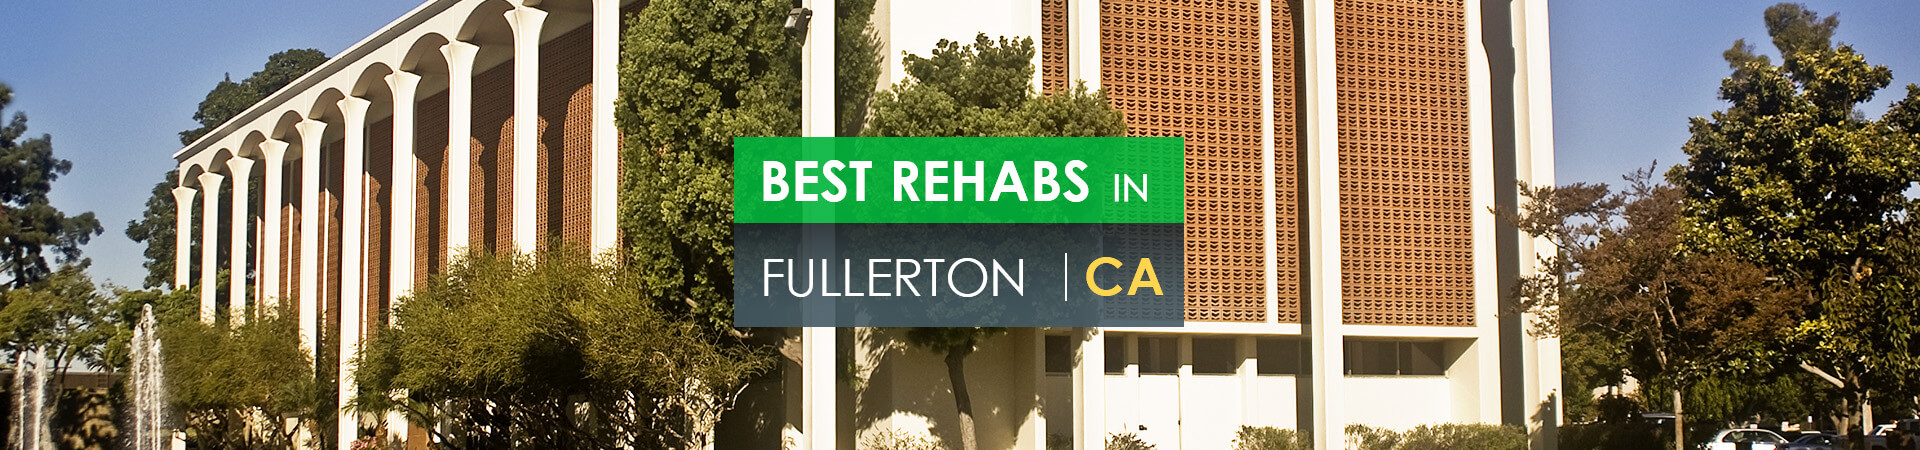 Best rehabs in Fullerton, CA